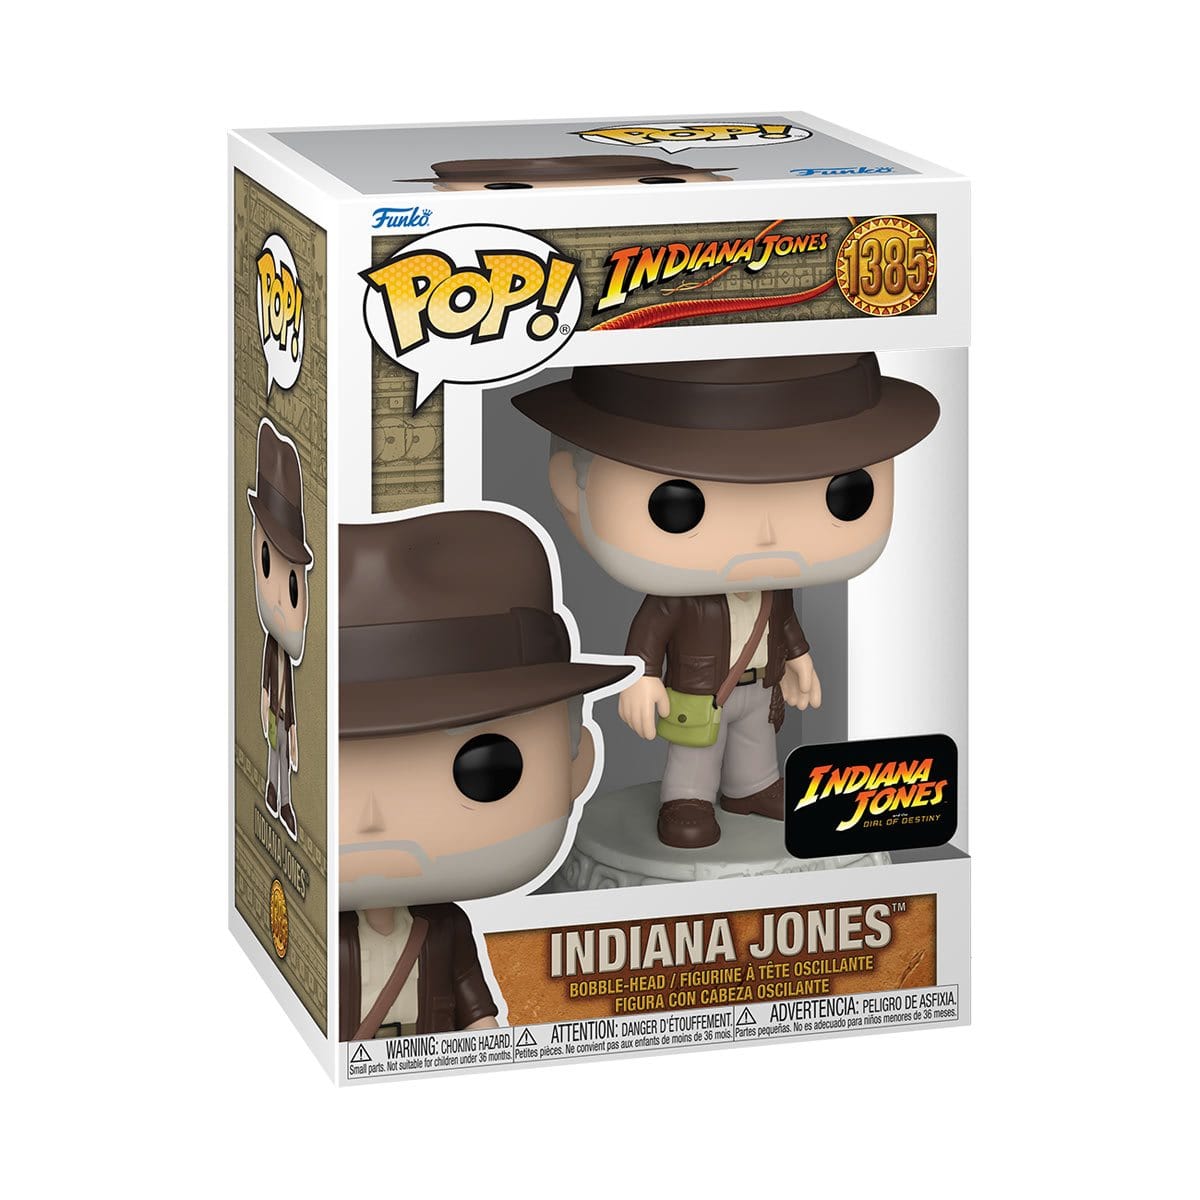 Funko Vinyl Figure Indiana Jones 5 Pop! Vinyl Figure FU63986 Indiana Jones #1385